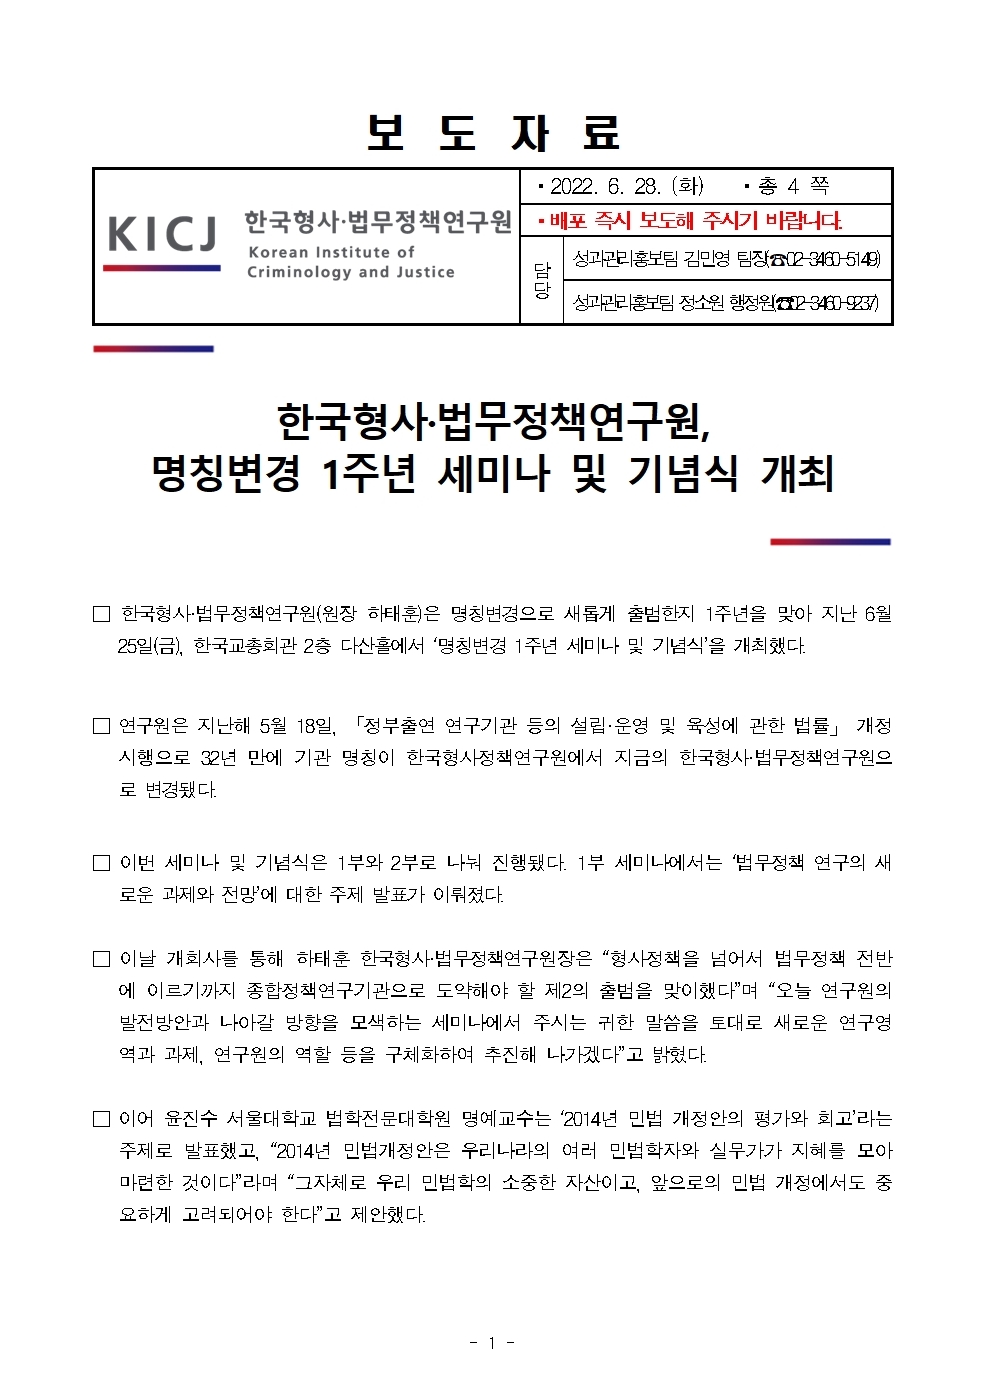 한국형사·법무정책연구원 명칭변경 1주년 세미나 및 기념식 개최 : 자세한 내용은 하단 pdf파일 참조